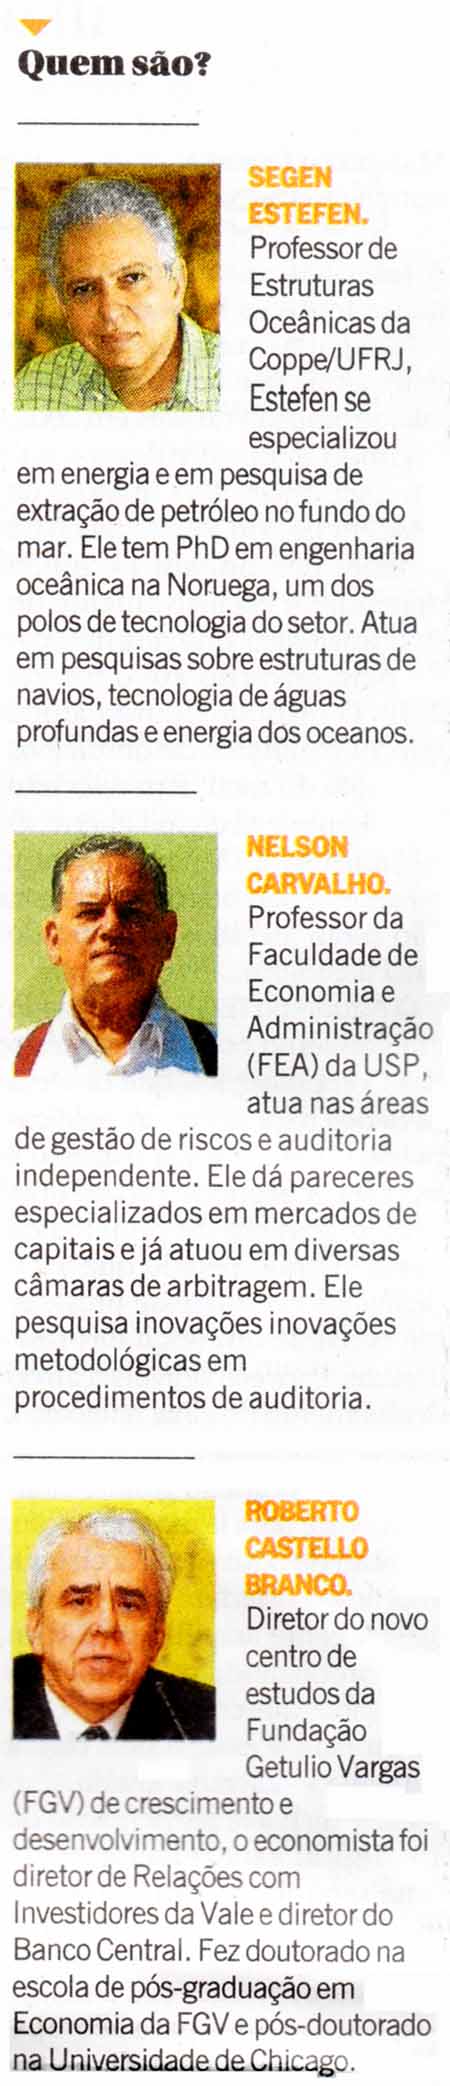 O Globo - 30/04/15 - PETROBRAS: No CA s 2 nomes do governo